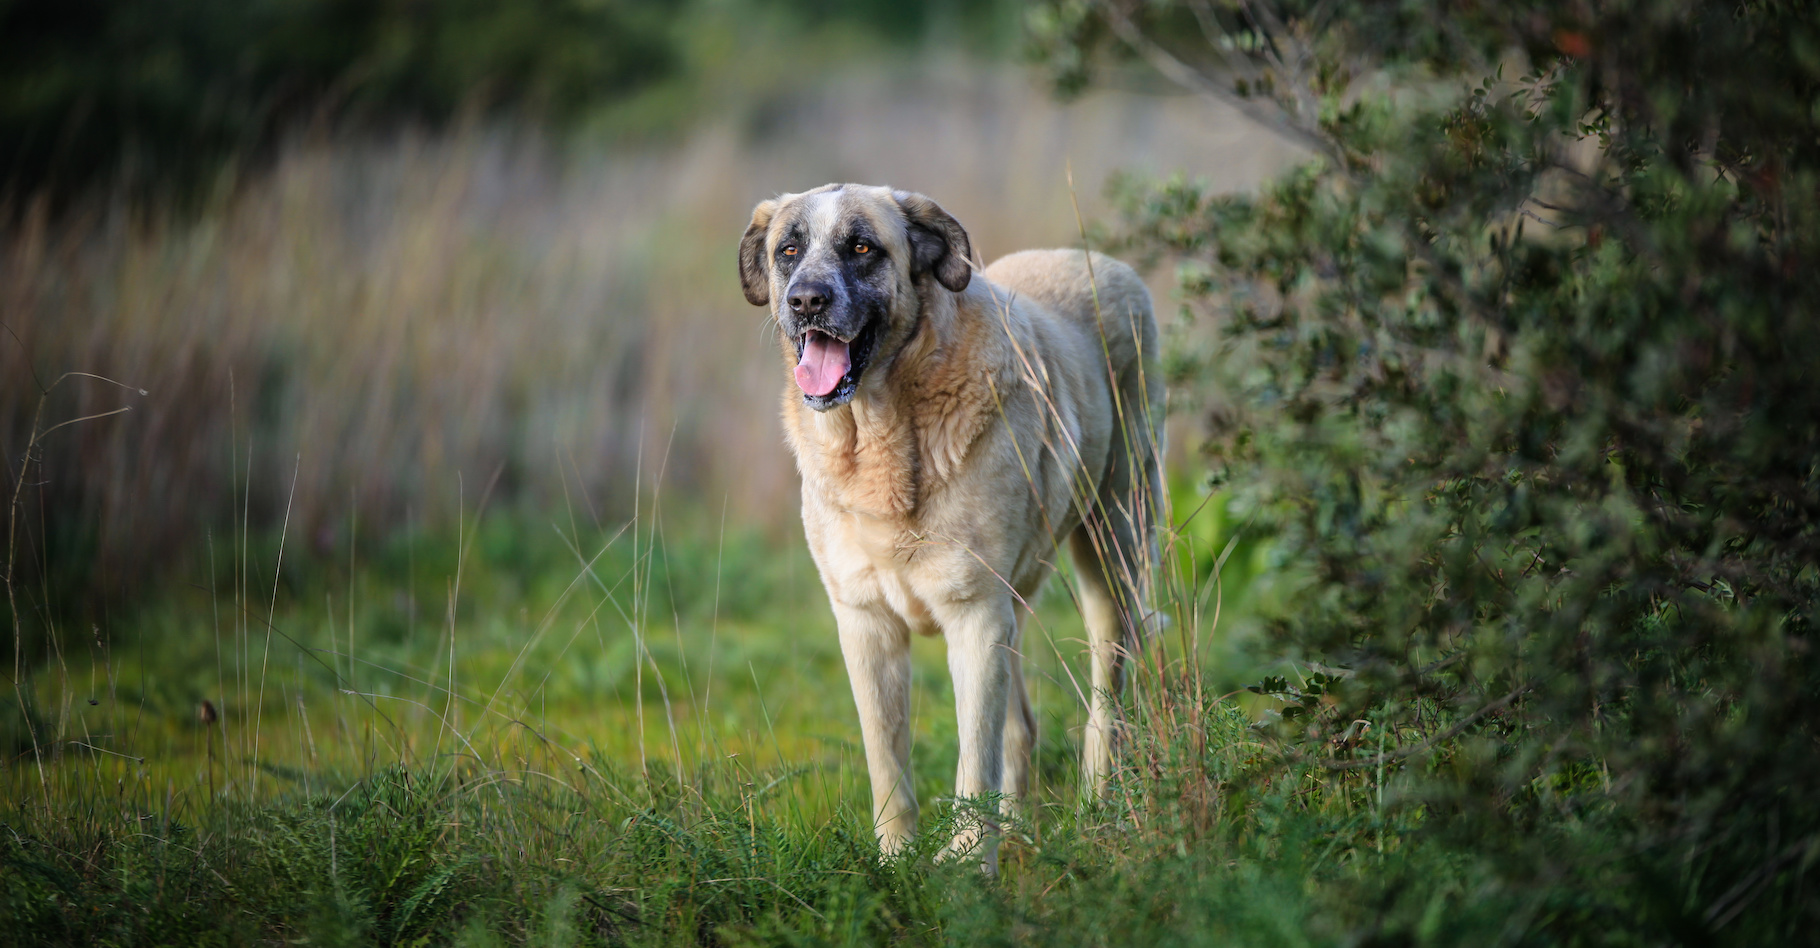 Le rafeiro de l’Alentejo est un chien originaire du Portugal. Un chien de berger utile pour protéger les troupeaux et qui se révèle aussi un excellent chien de garde. L’un de ces représentants, Bobi, vient d’être officiellement propulsé au rang de chien le plus vieux du monde. © Photo Art, Adobe Stock